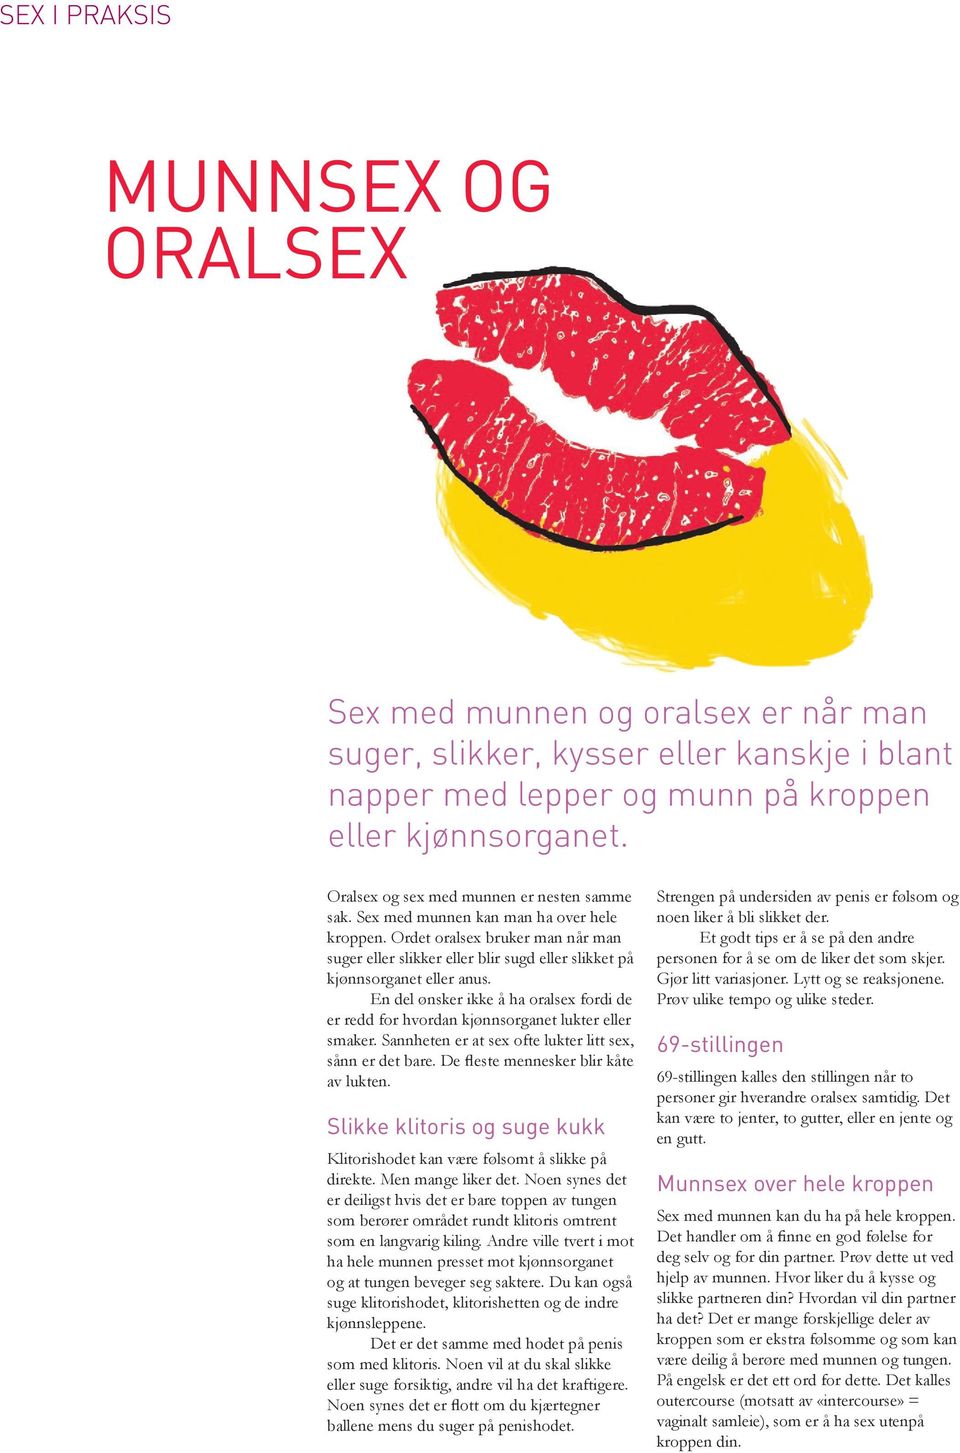 Ordet oralsex bruker man når man suger eller slikker eller blir sugd eller slikket på kjønnsorganet eller anus.